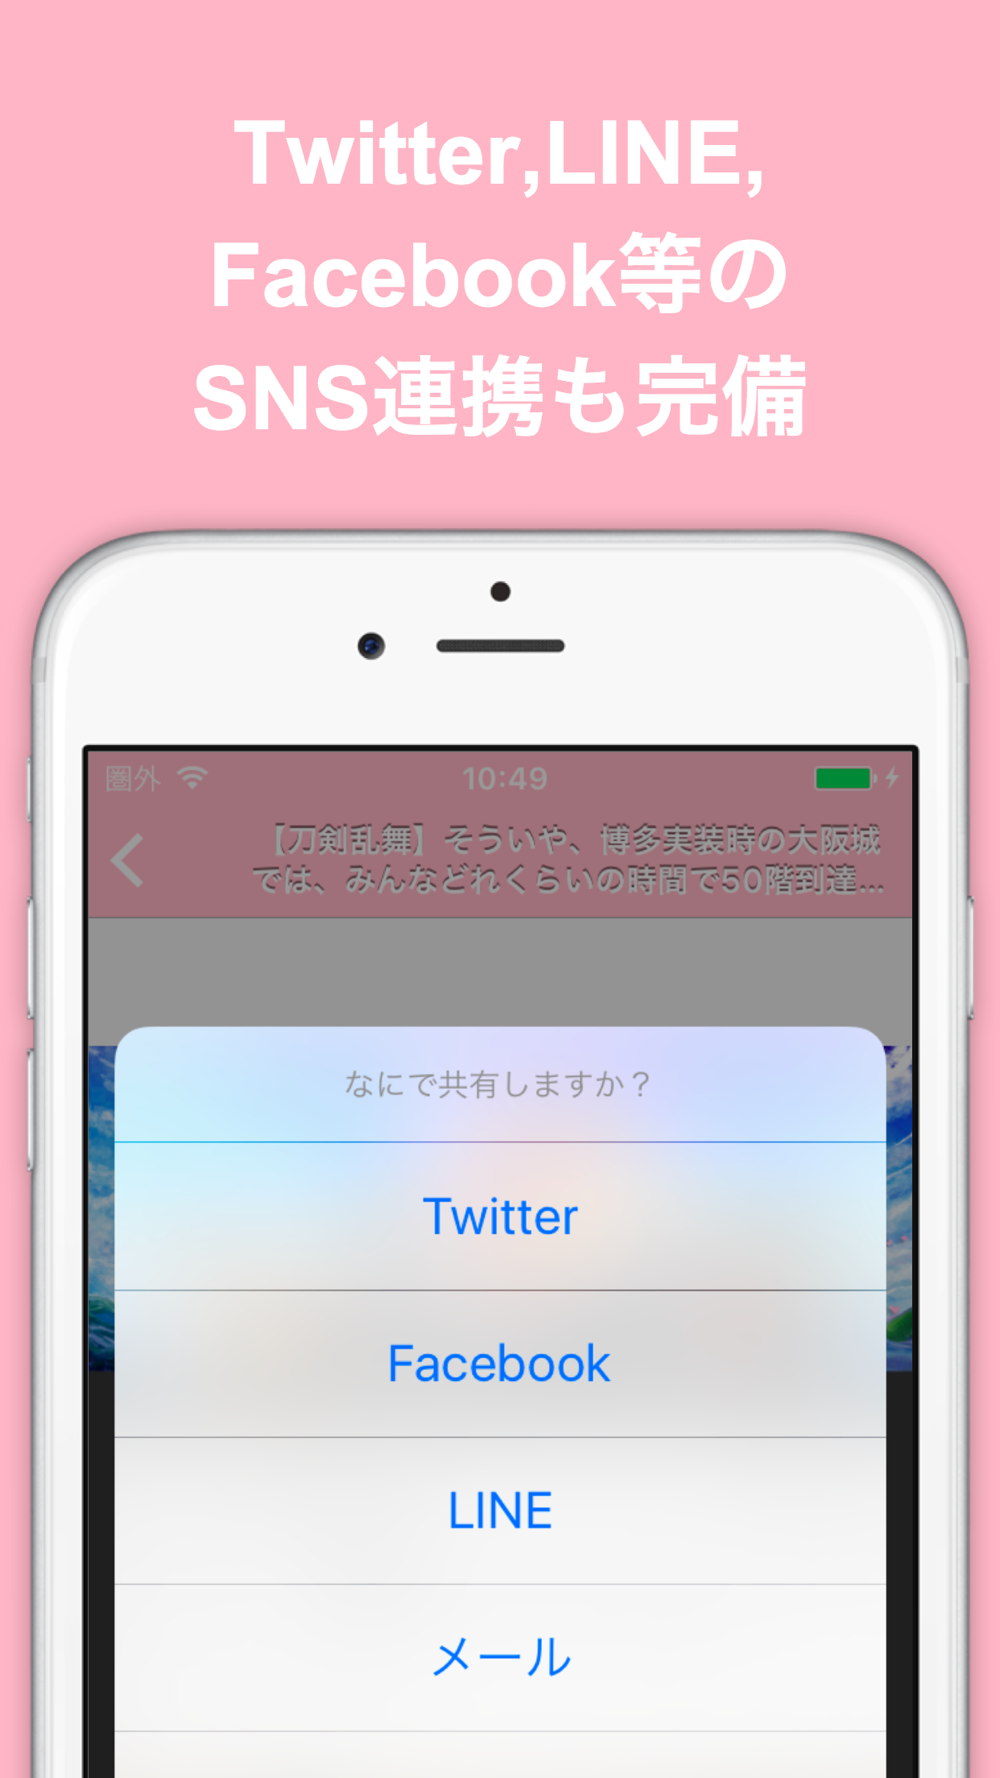 ブログまとめニュース速報 For 刀剣乱舞 Onlineとうらぶ Free Download App For Iphone Steprimo Com